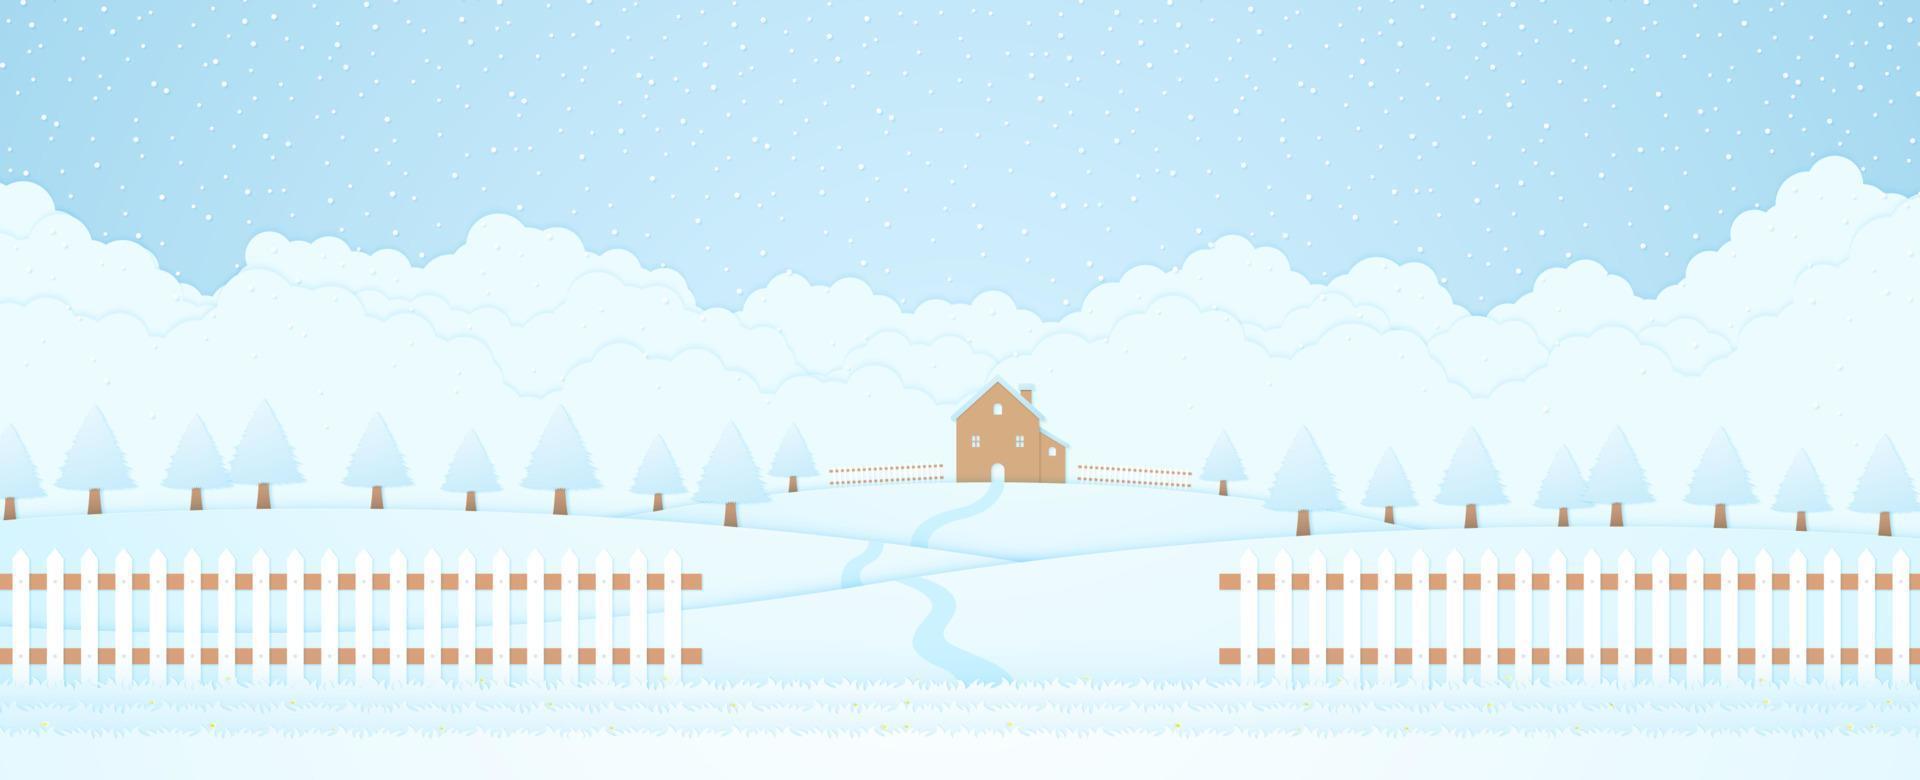 paesaggio invernale, casa e alberi sulla collina con neve che cade, erba e recinzione, sfondo di nuvole, stile di arte della carta vettore